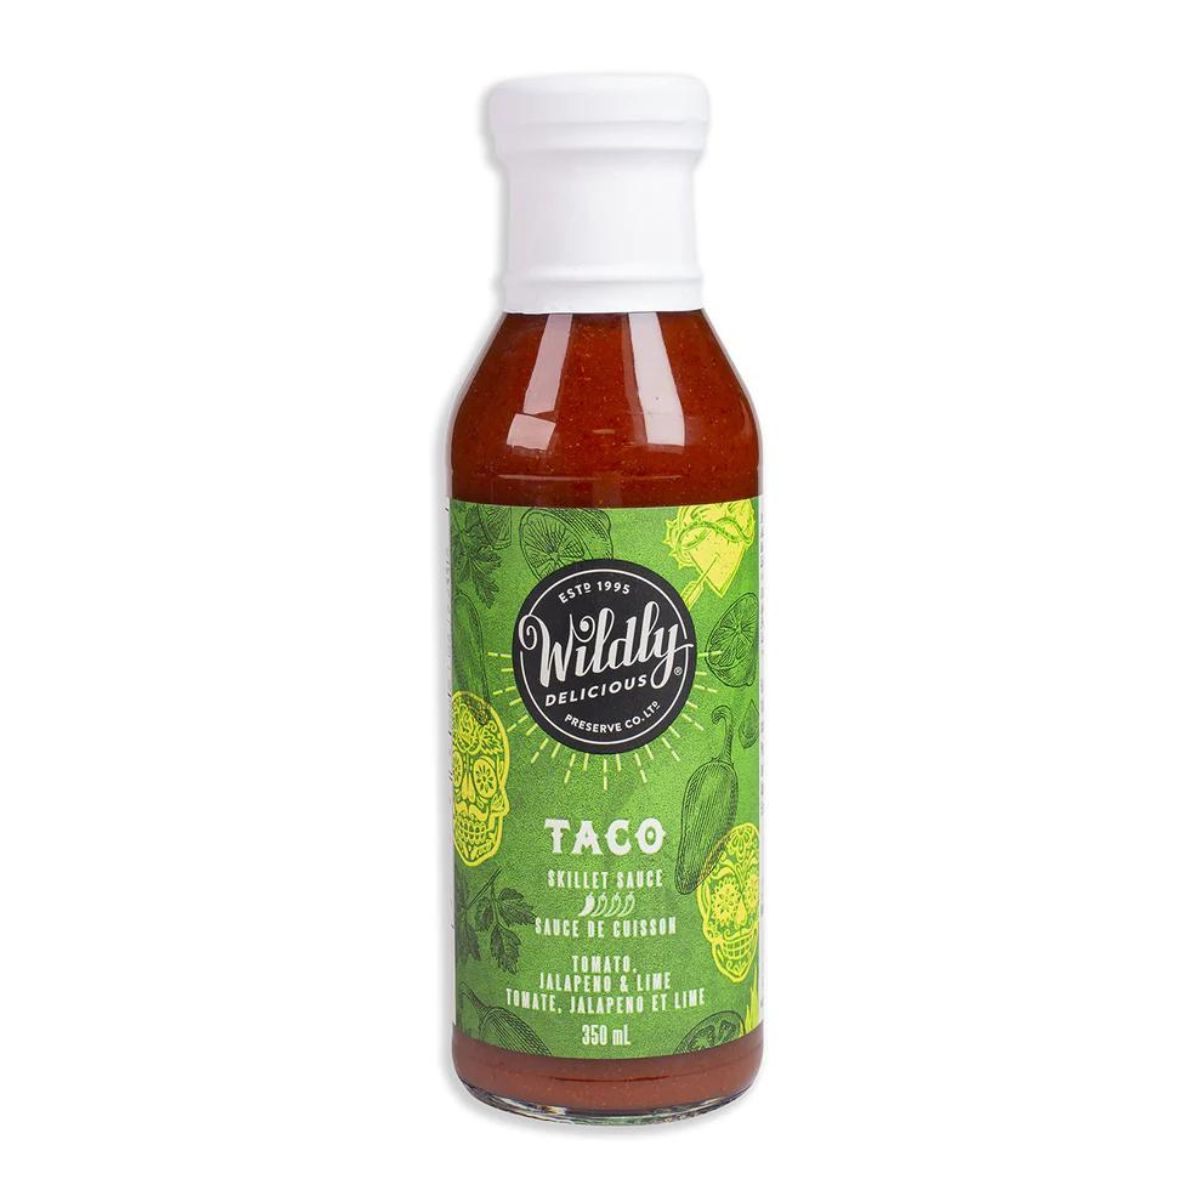 Taco Skillet Sauce- Making dinner easy